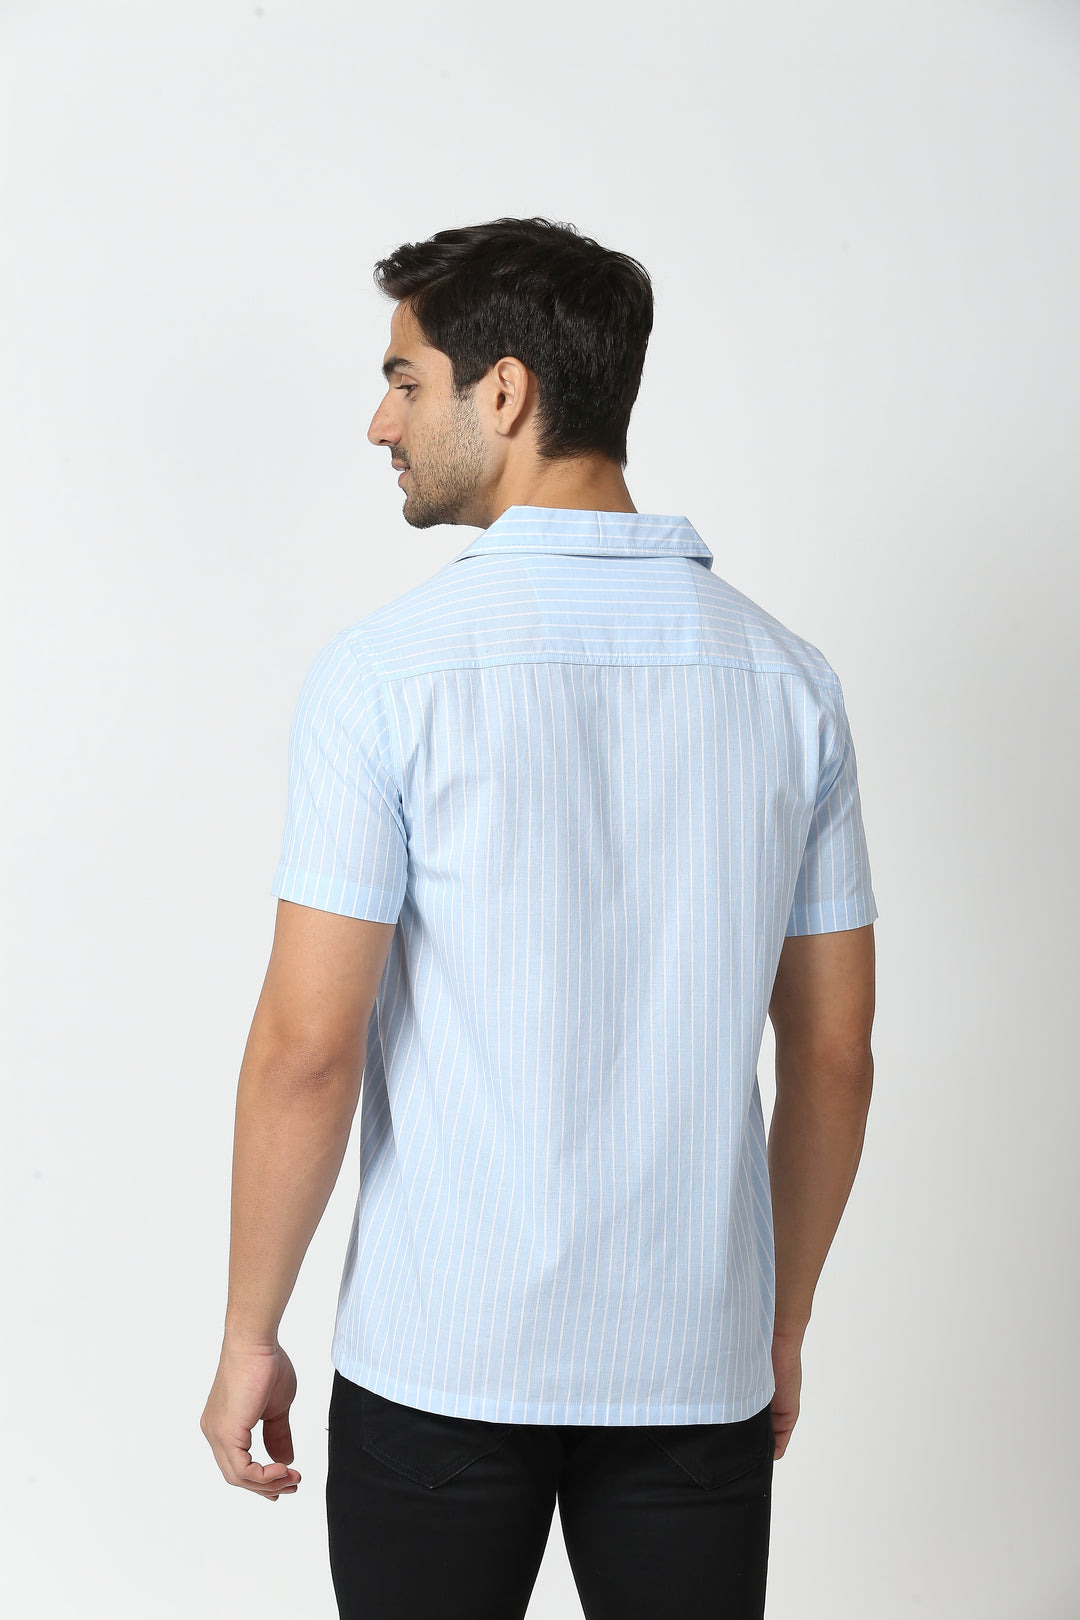 Opulent Blue Pinstripe Shirt